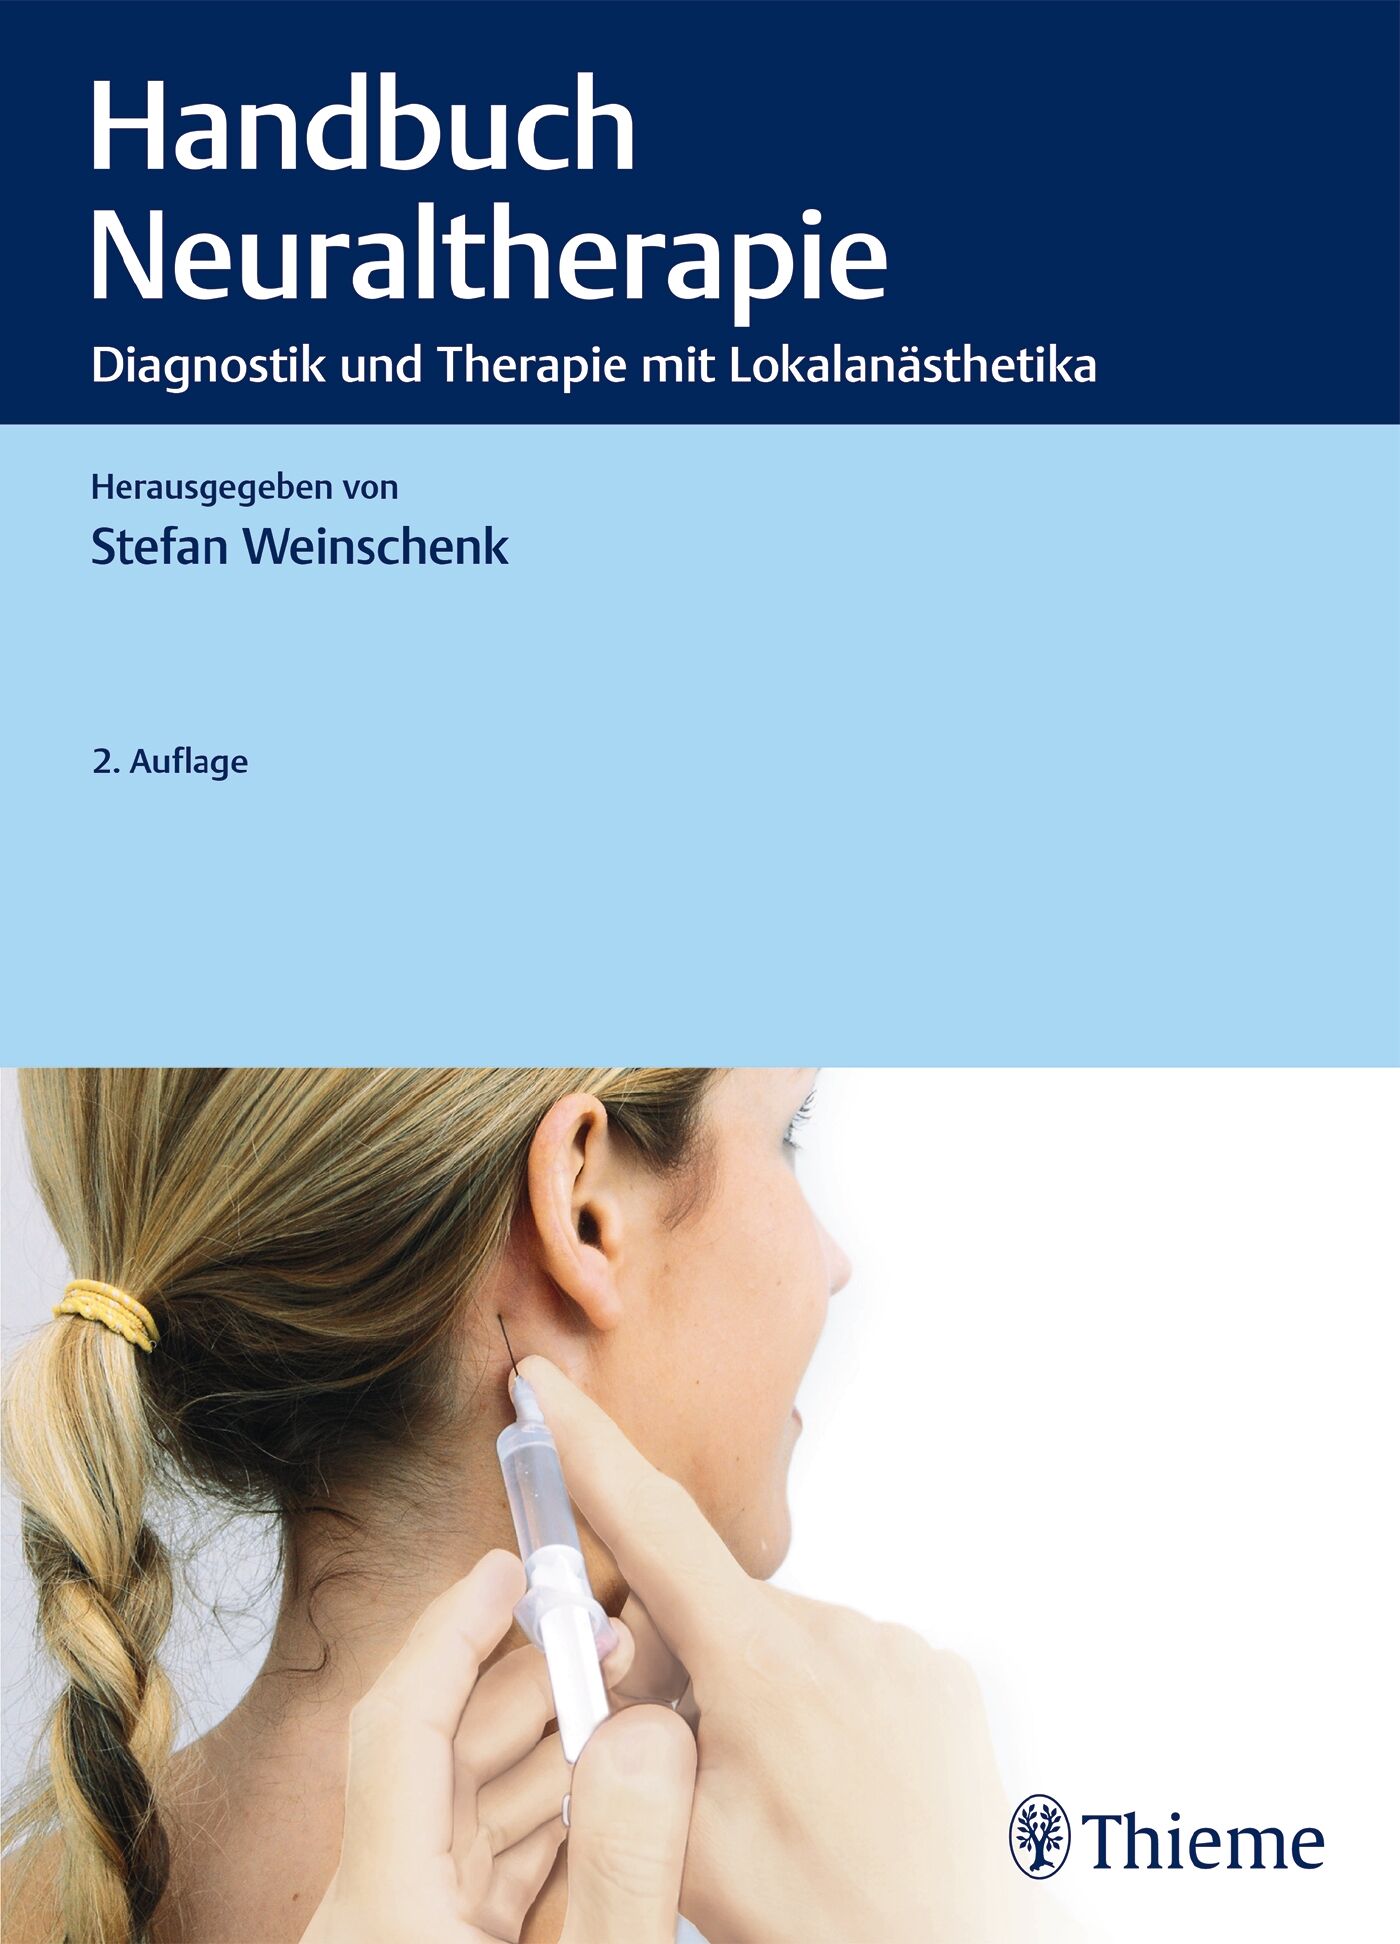 Handbuch Neuraltherapie, 9783132205017